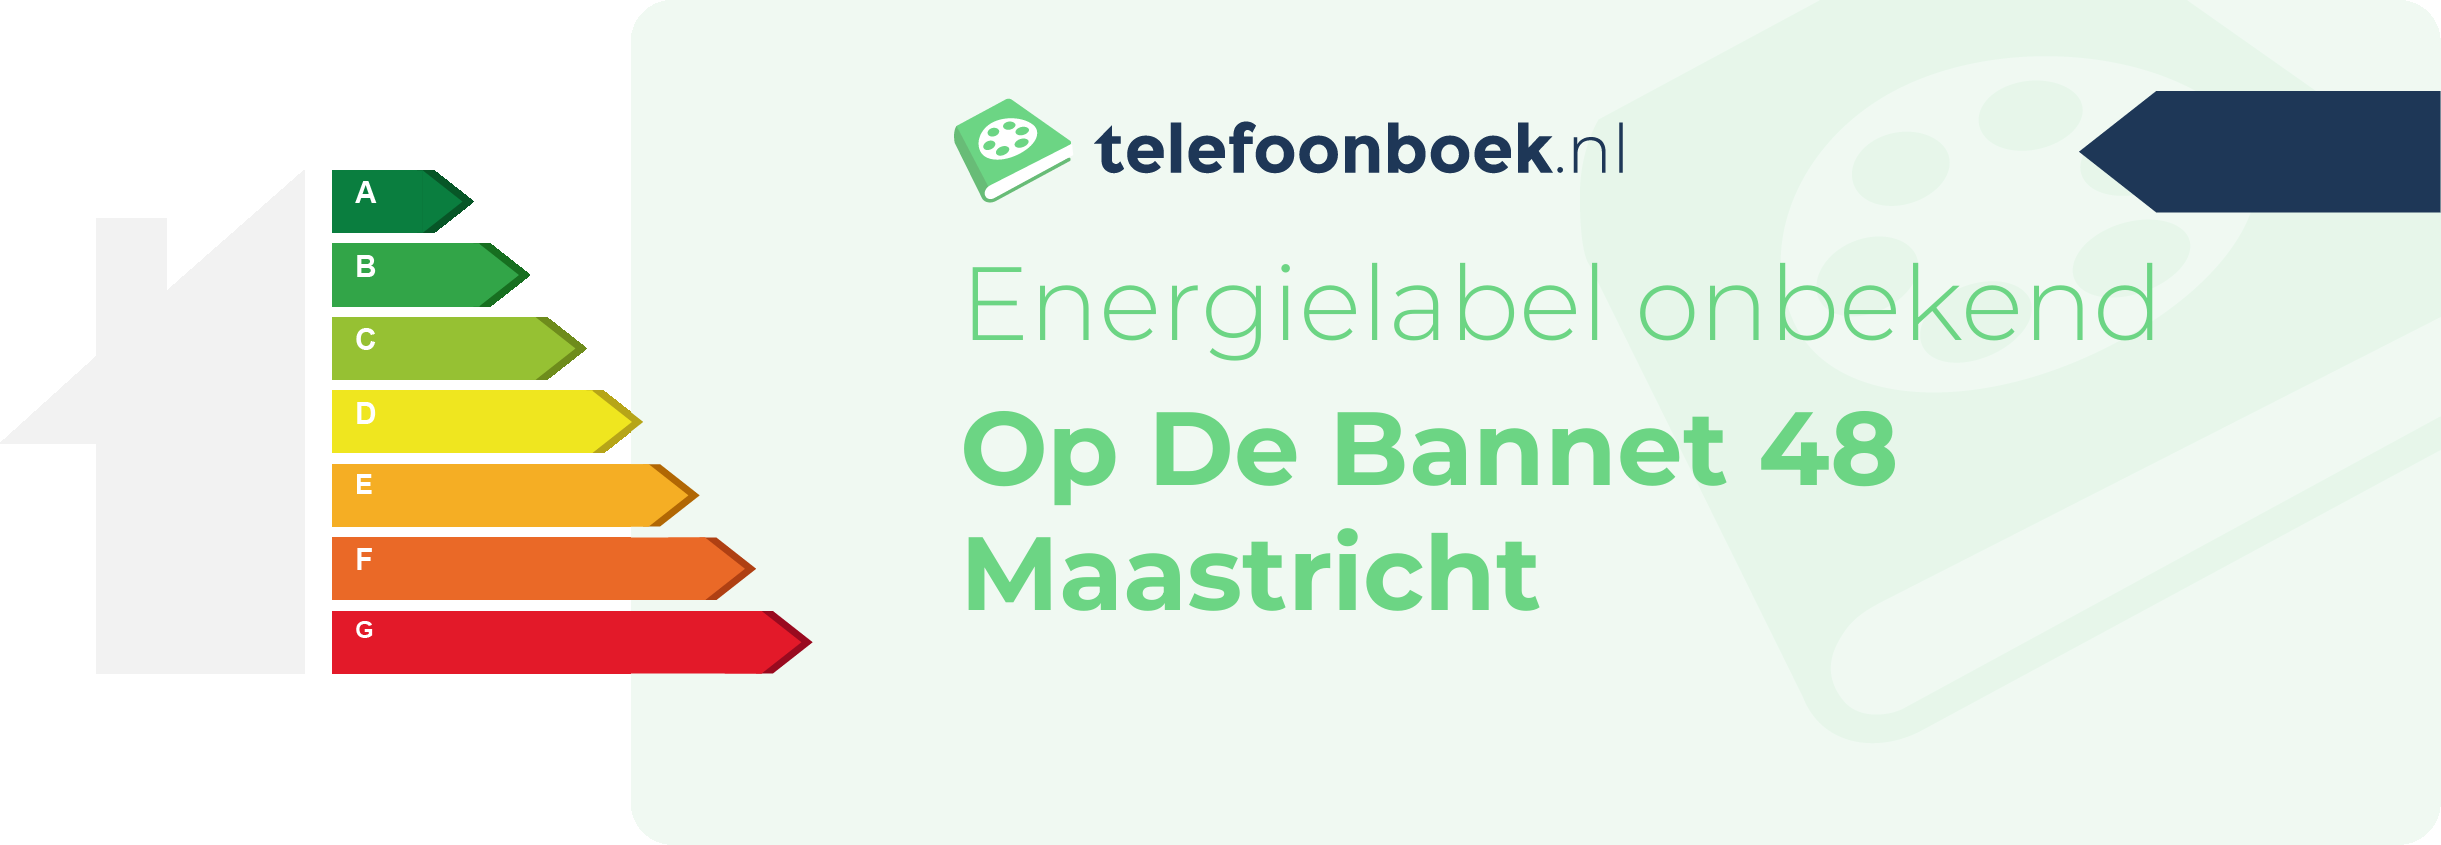 Energielabel Op De Bannet 48 Maastricht